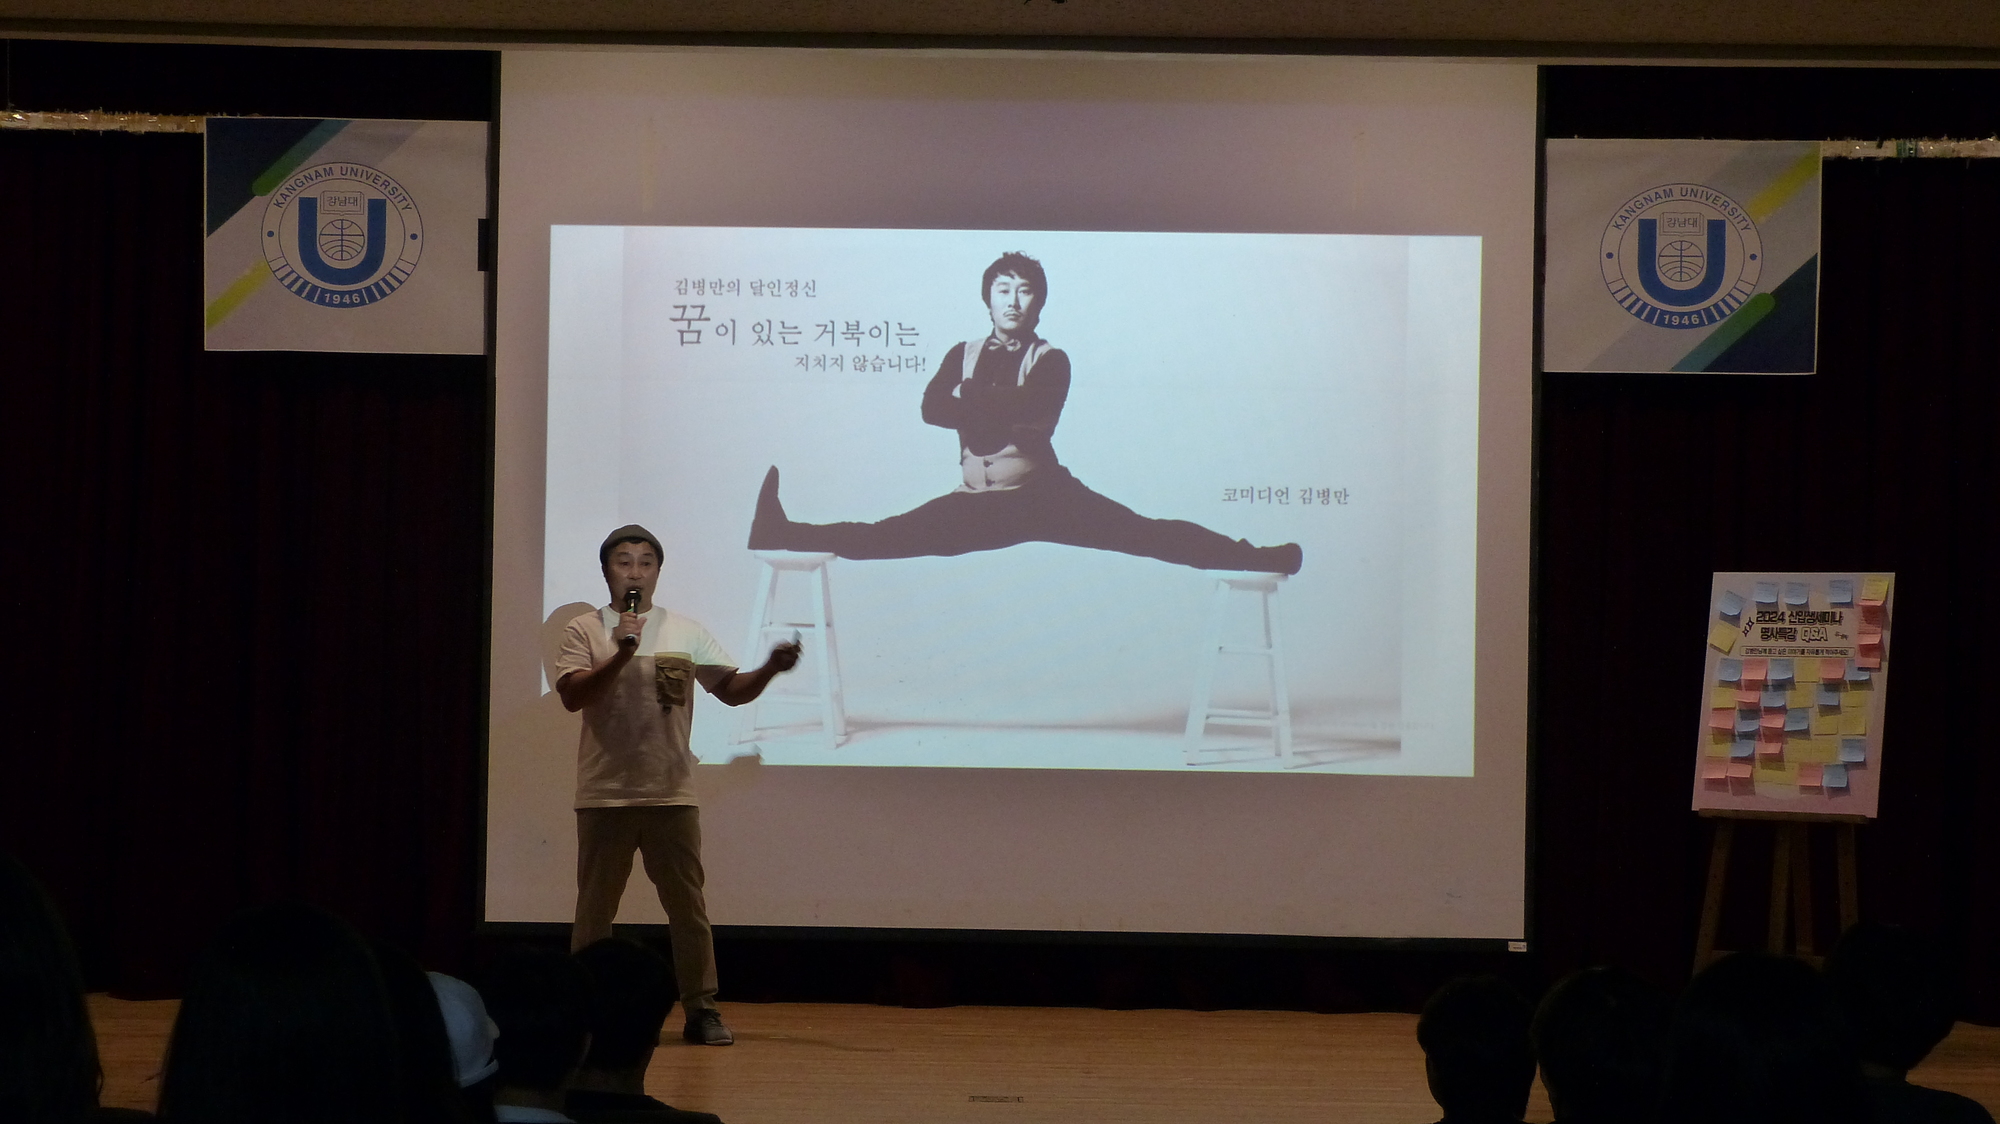 개그맨 김병만이 달인 프로그램 당시 사진을 소개하는 모습